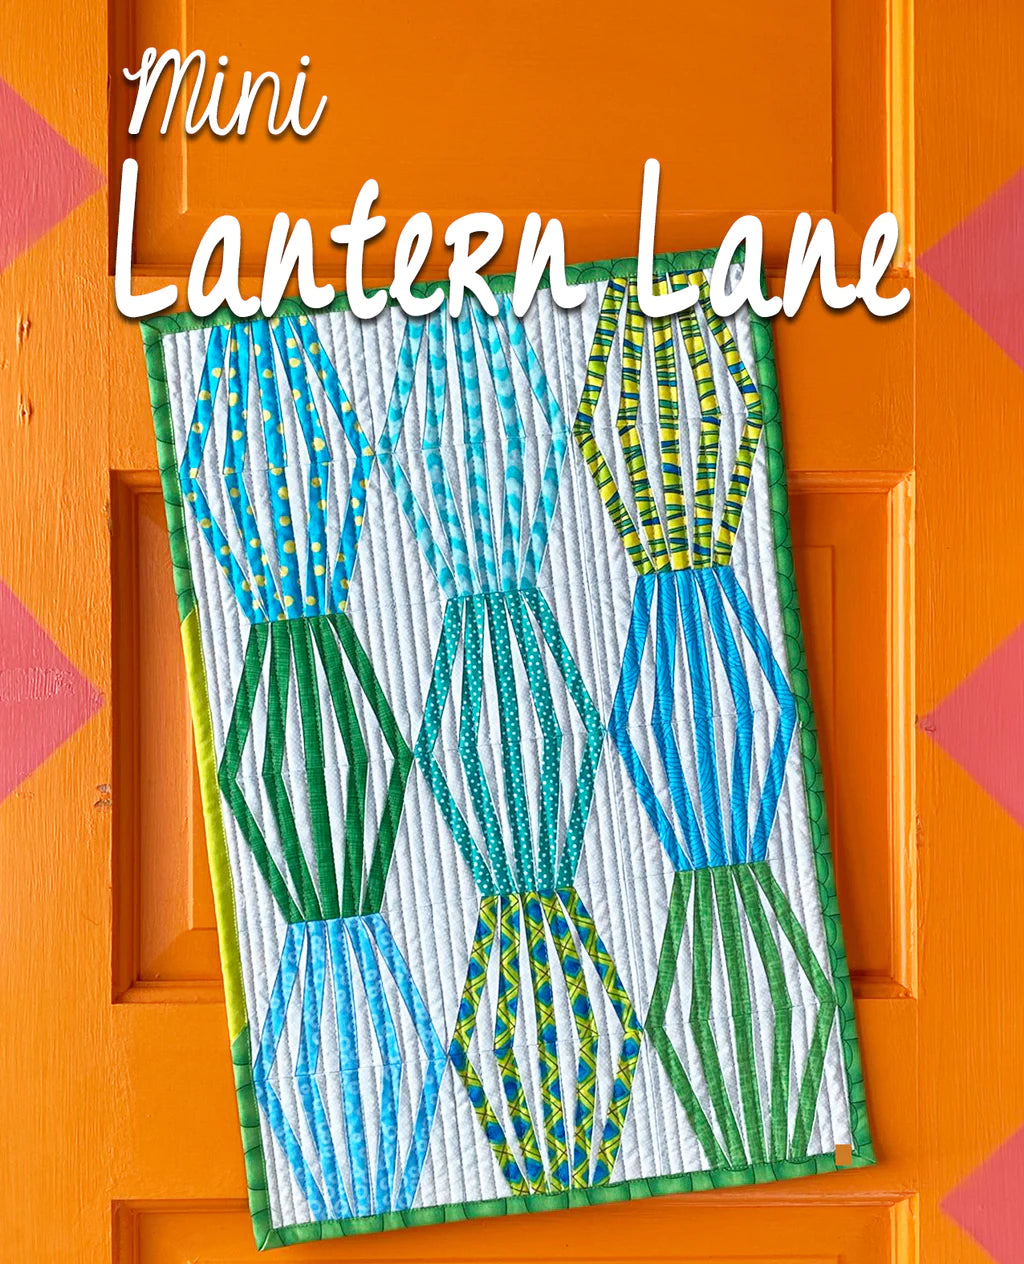 Mini Lantern Lane Quilt Pattern by Sassafras Lane Designs